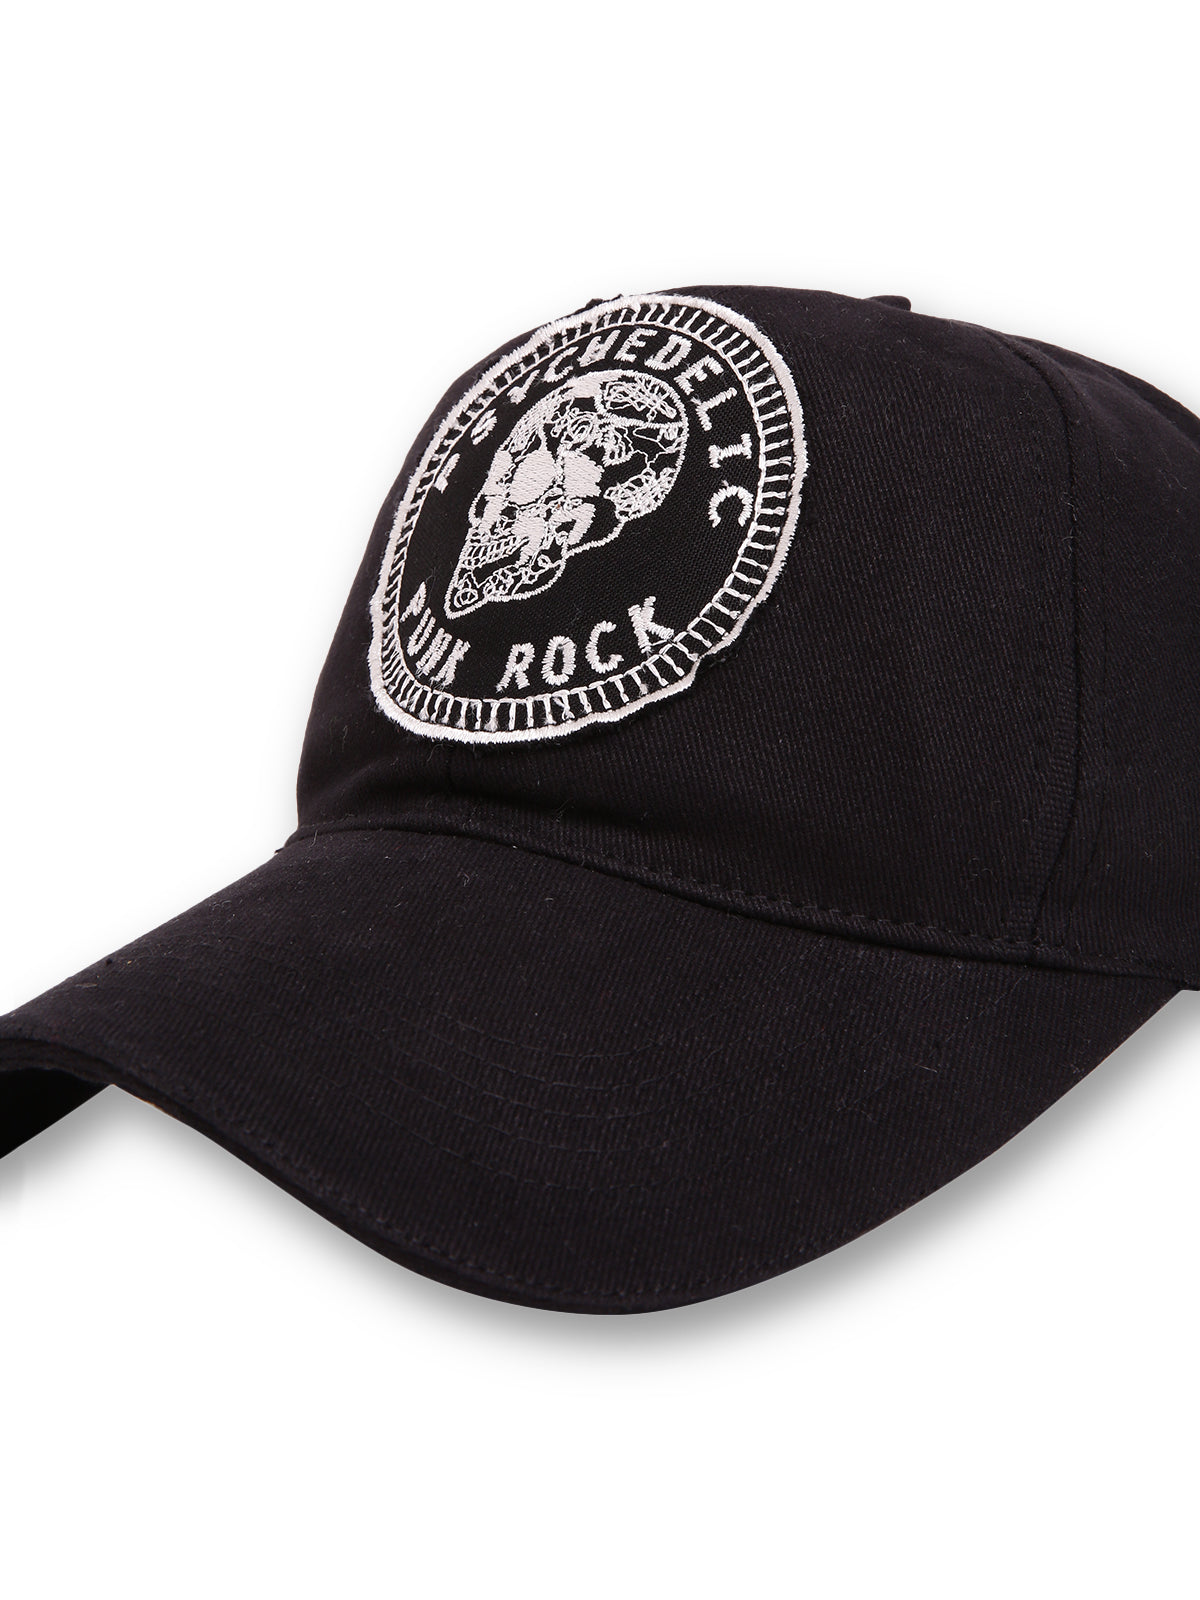 Punk Rock Black Cap